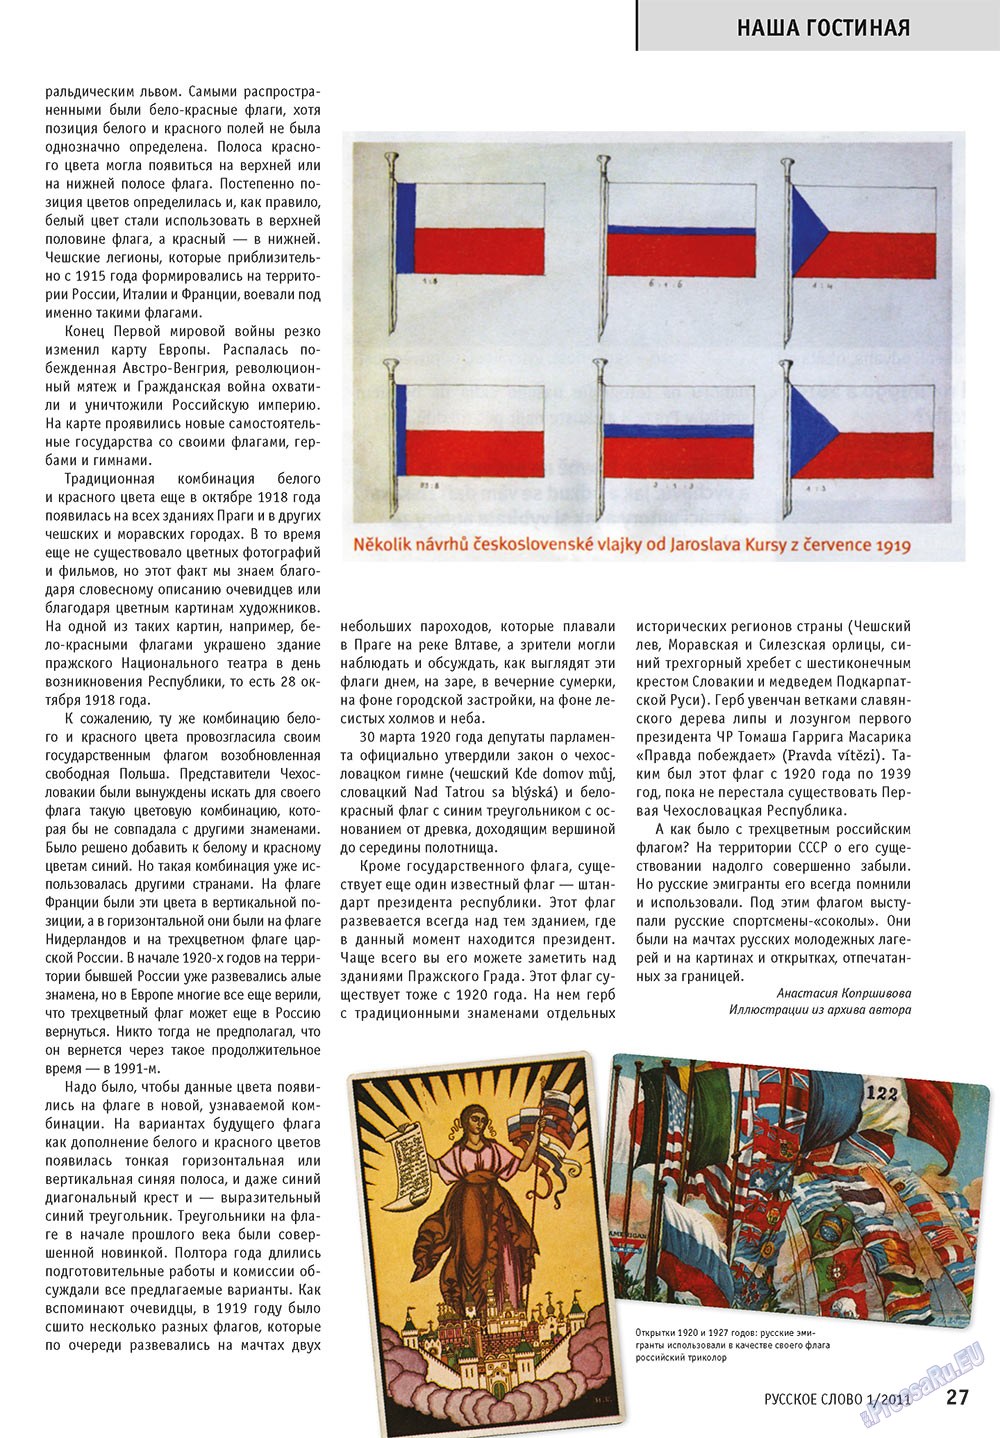 Русское слово, журнал. 2011 №1 стр.29